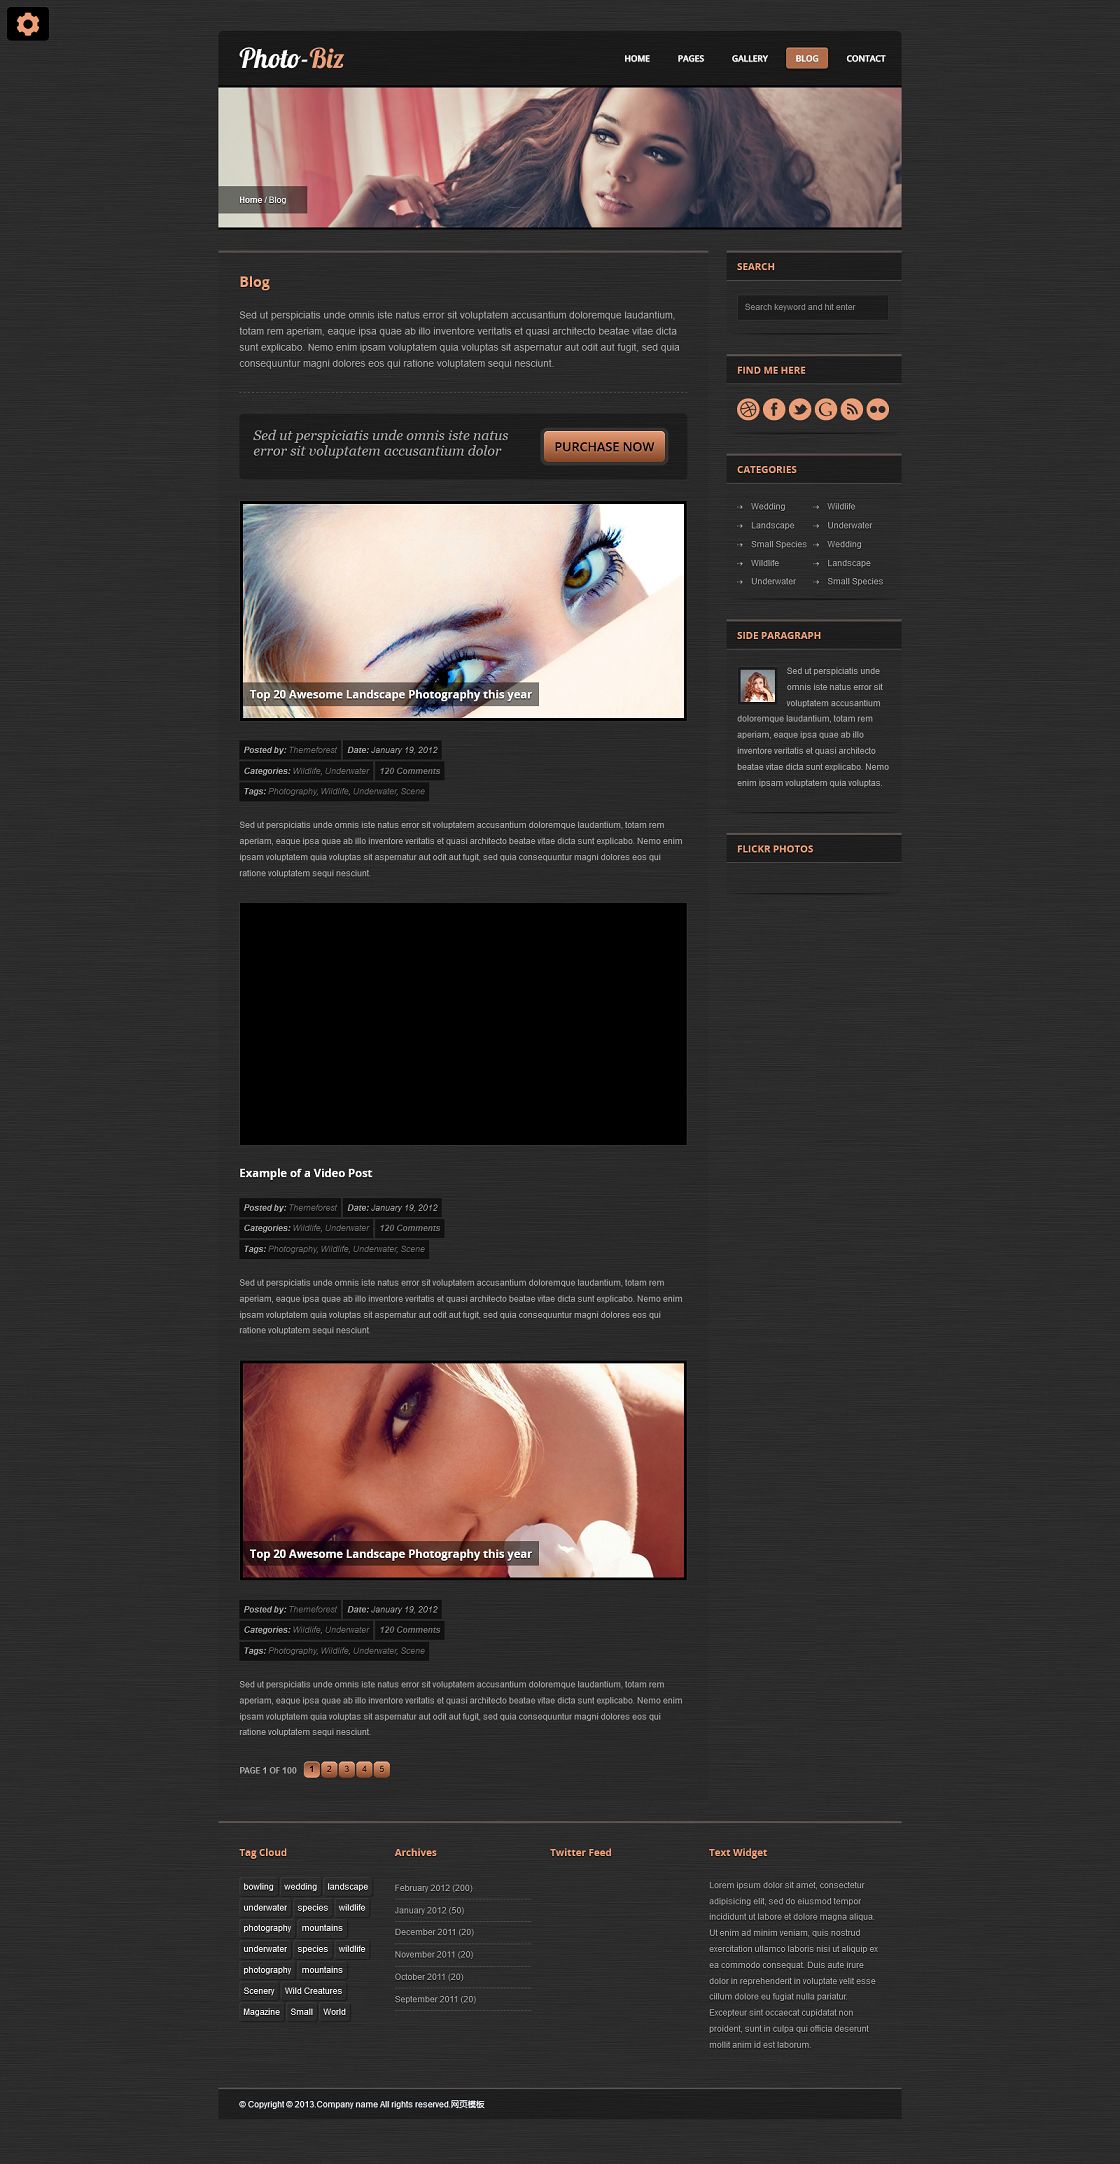 黑色质感纹理女性化妆品公司网站模板